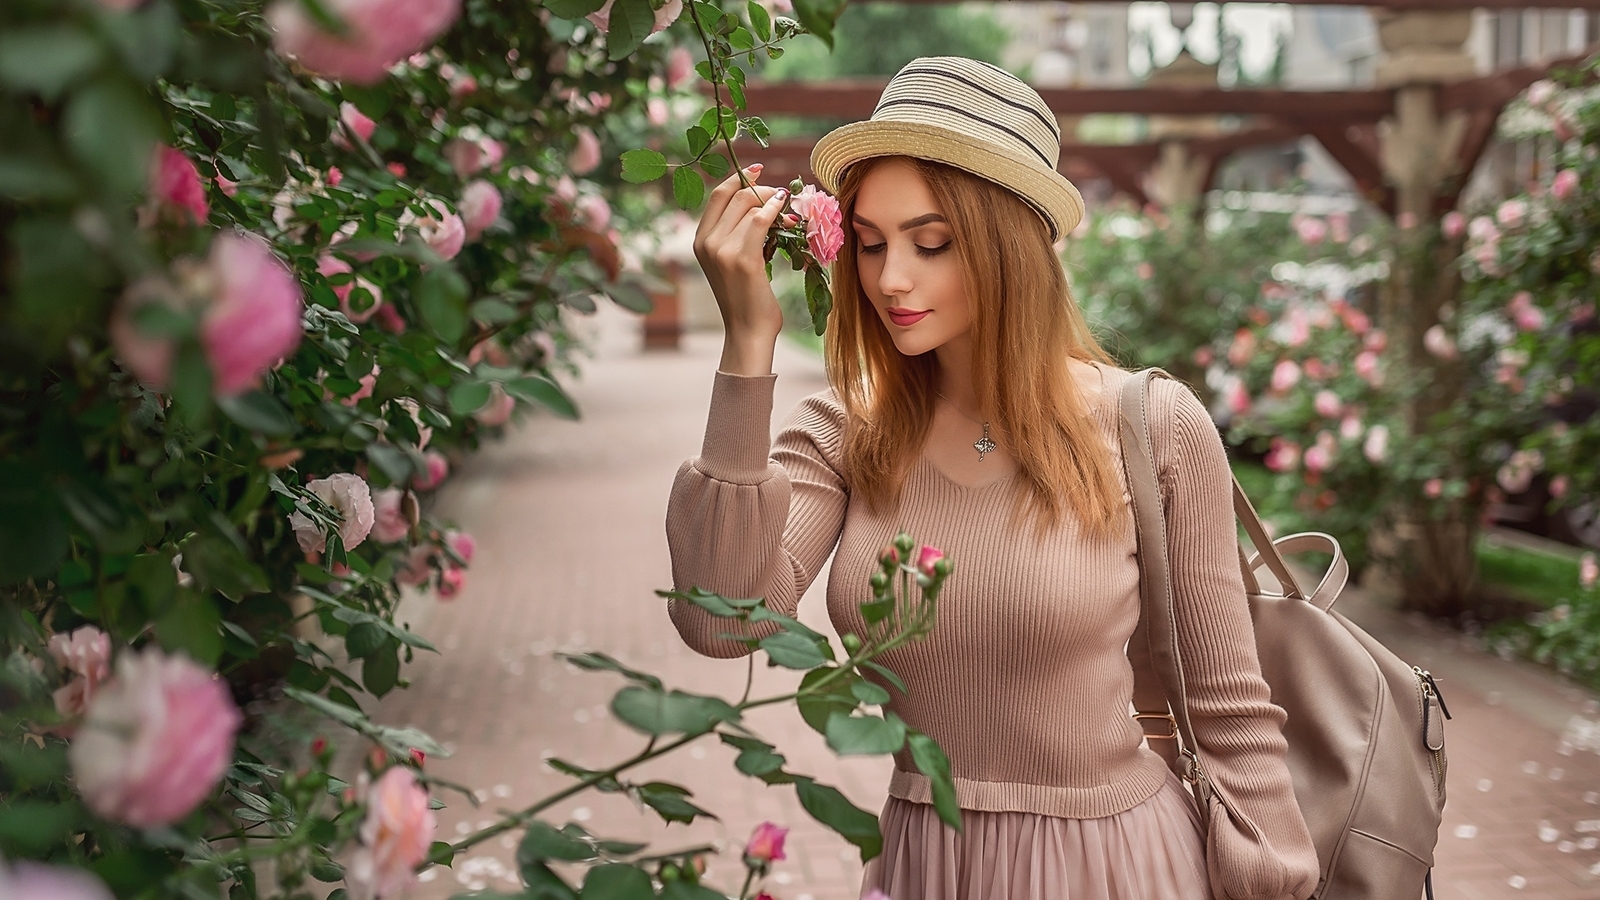 Image: Girl, pink, dress, hat, mood, rose, Bush, garden, backpack, Christina Kardava